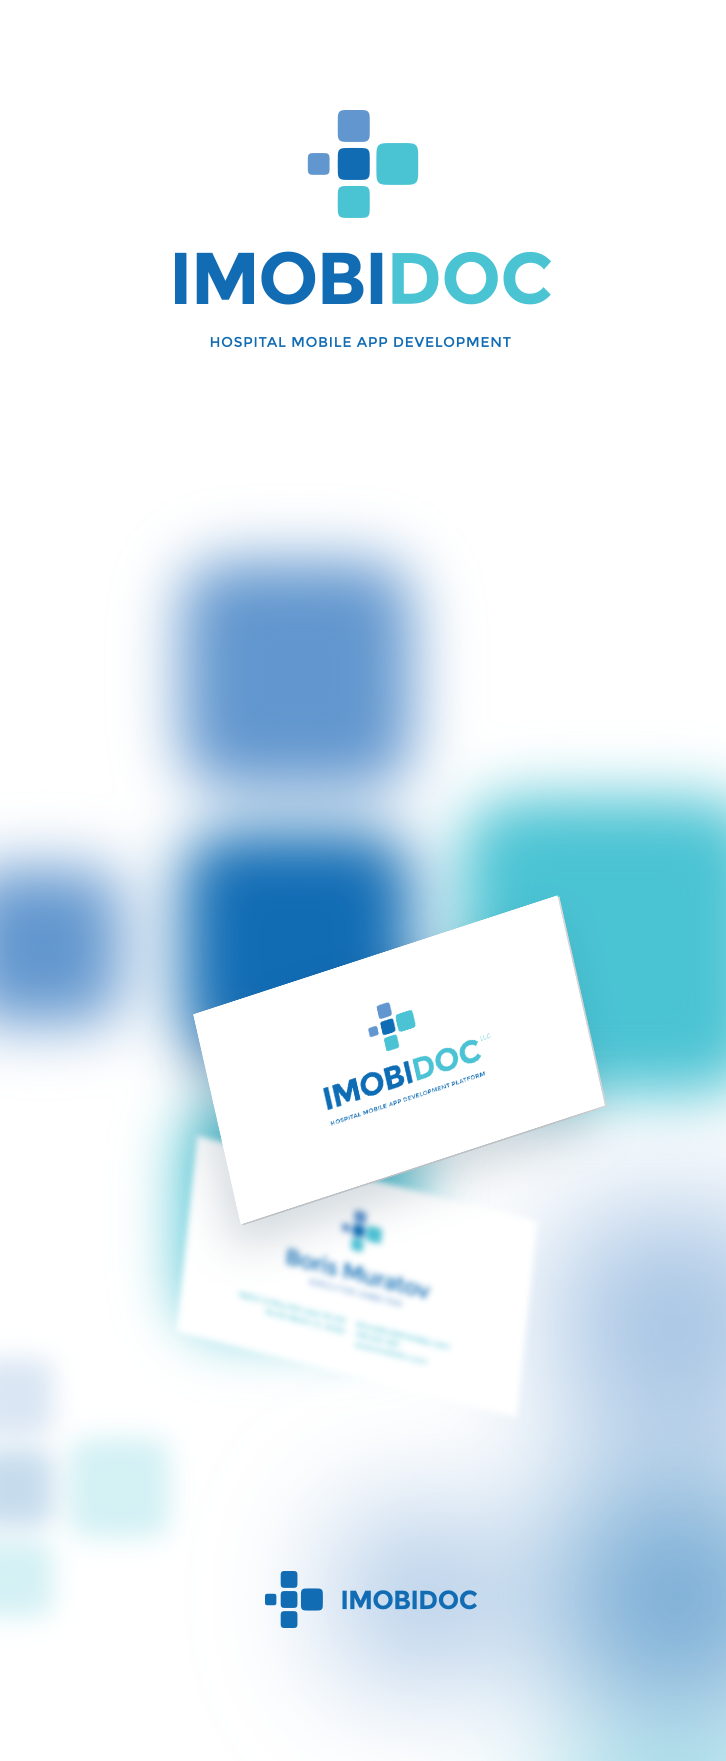 Эскиз проекта IMOBIDOC